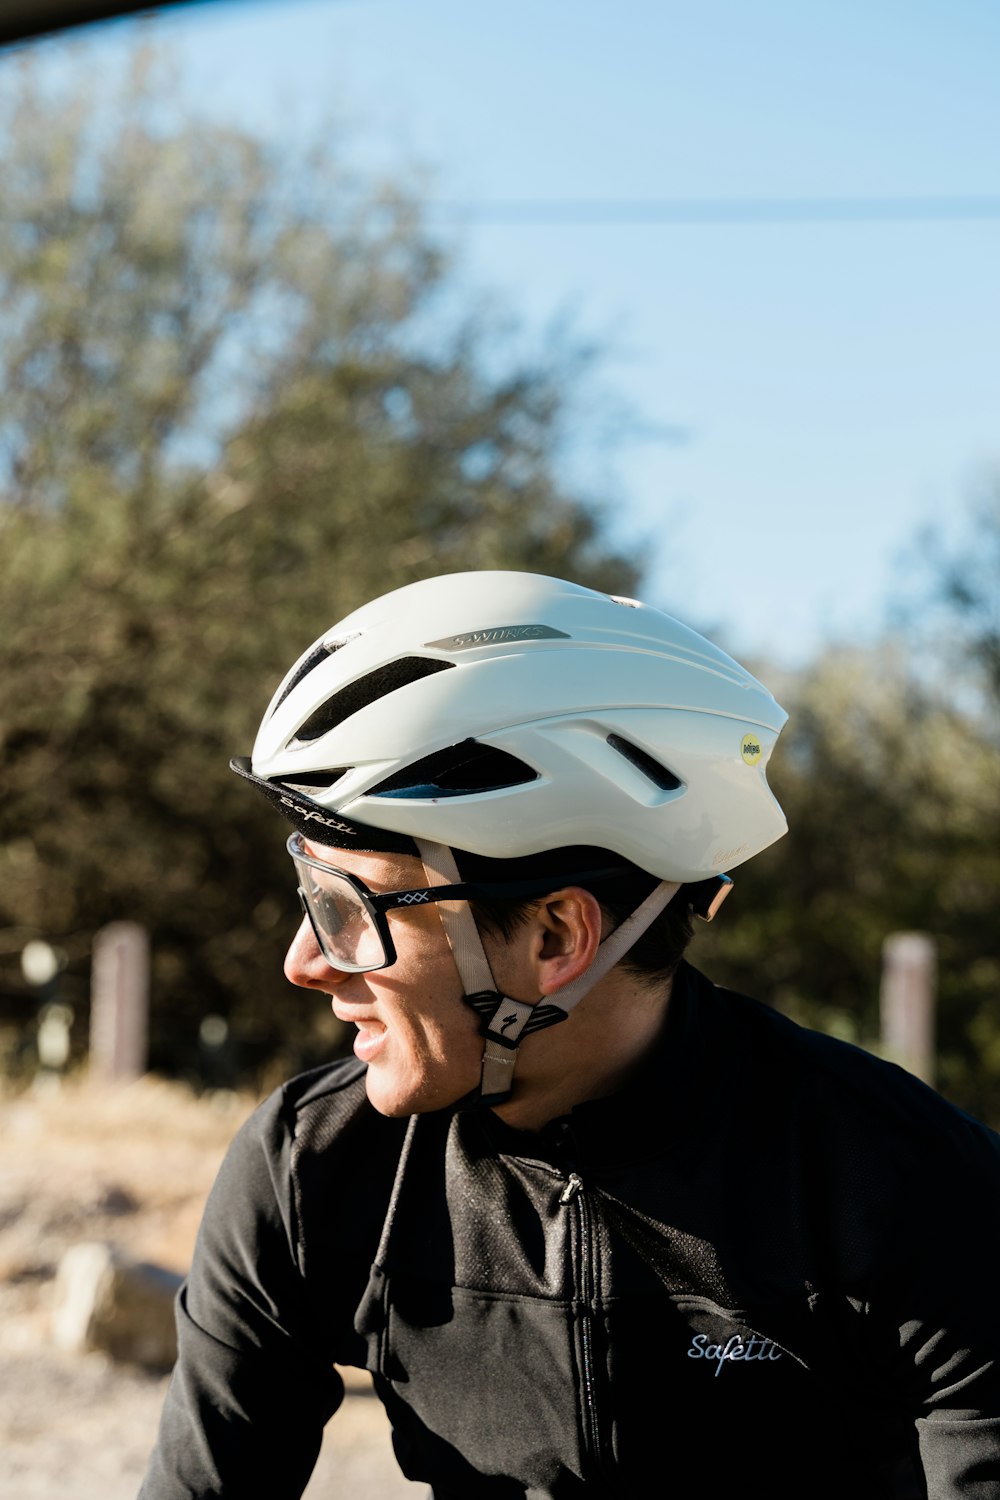 a man riding a bike wearing a helmet